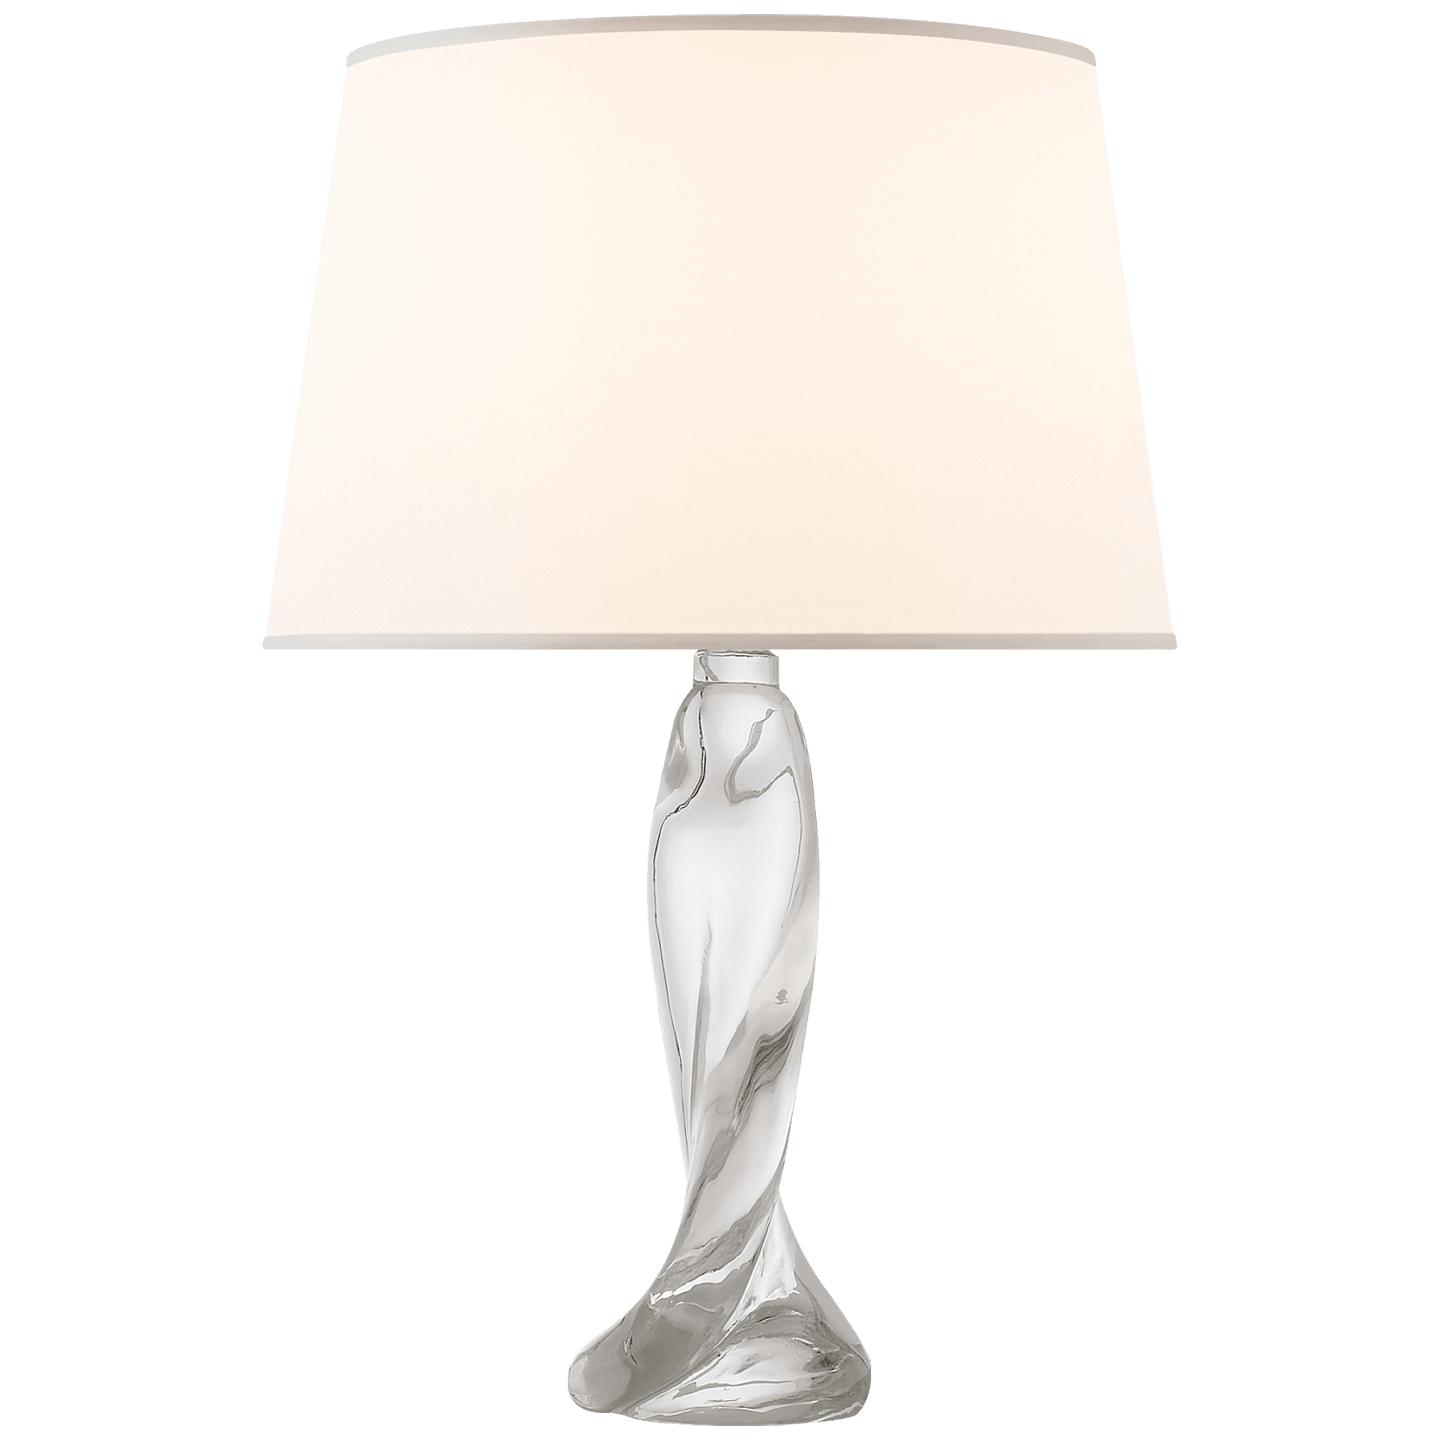 Купить Настольная лампа Chloe Table Lamp в интернет-магазине roooms.ru